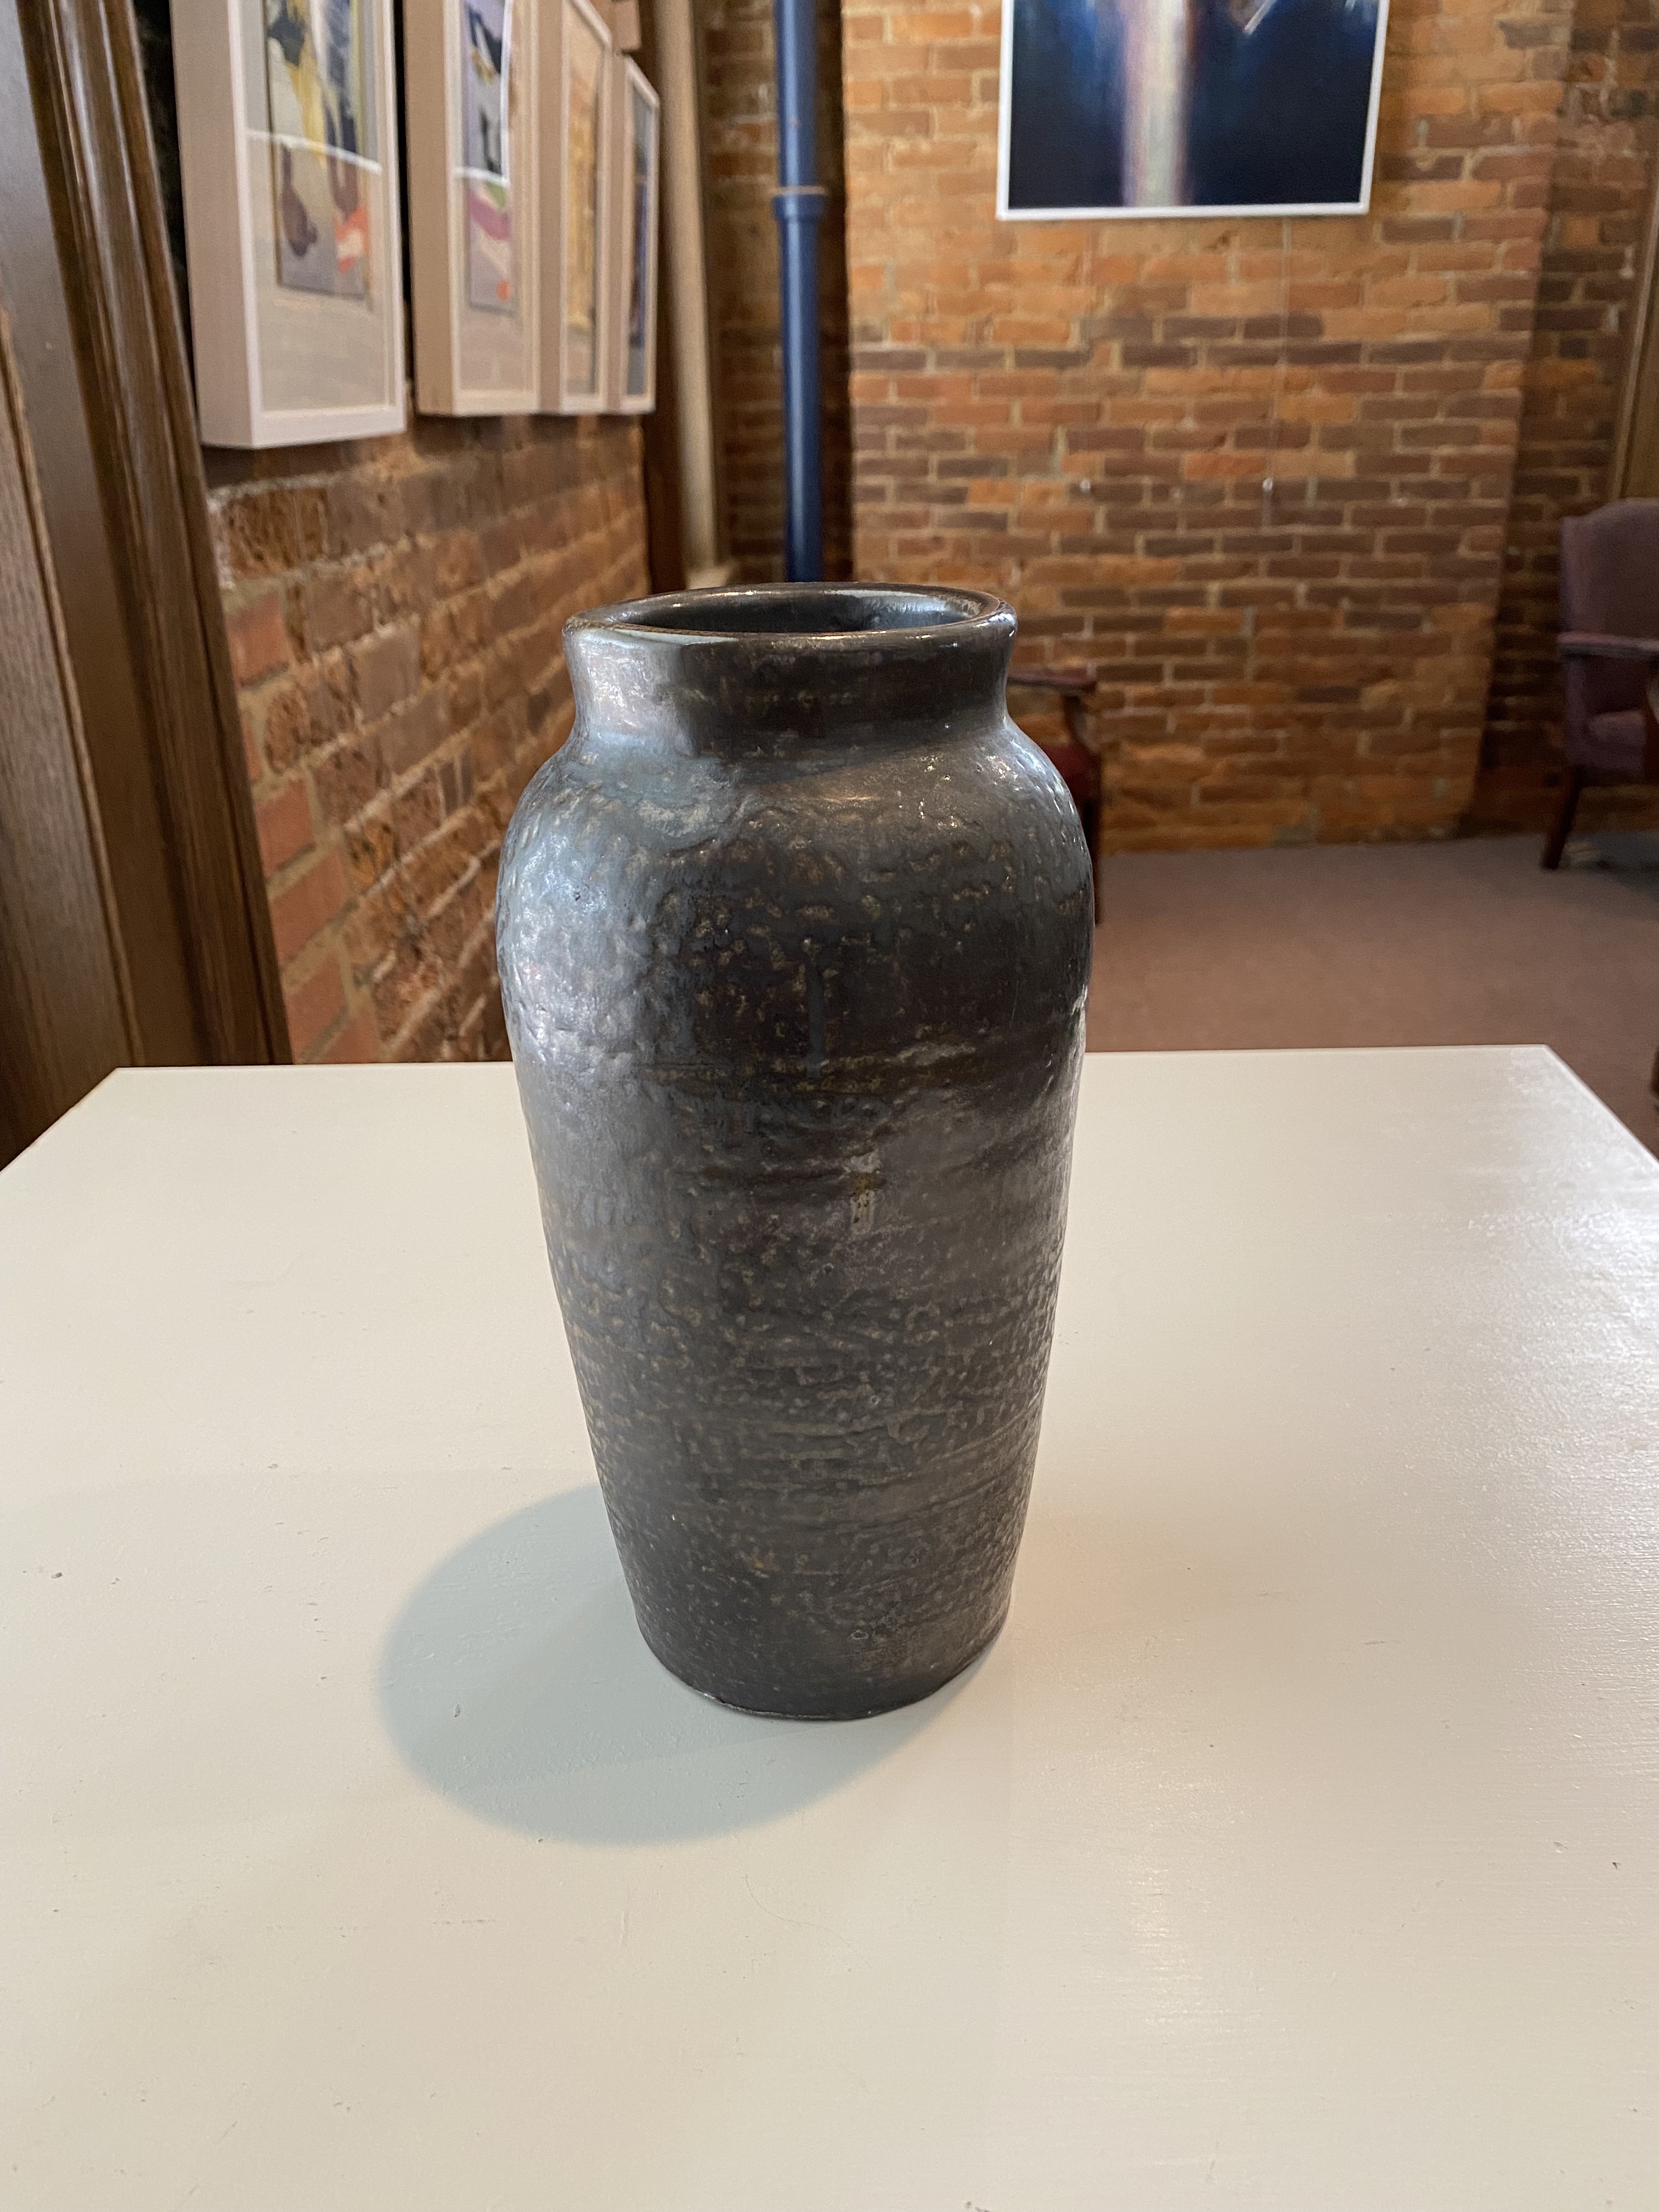 Vase
Salt-Fired
9"
$60.
SOLD